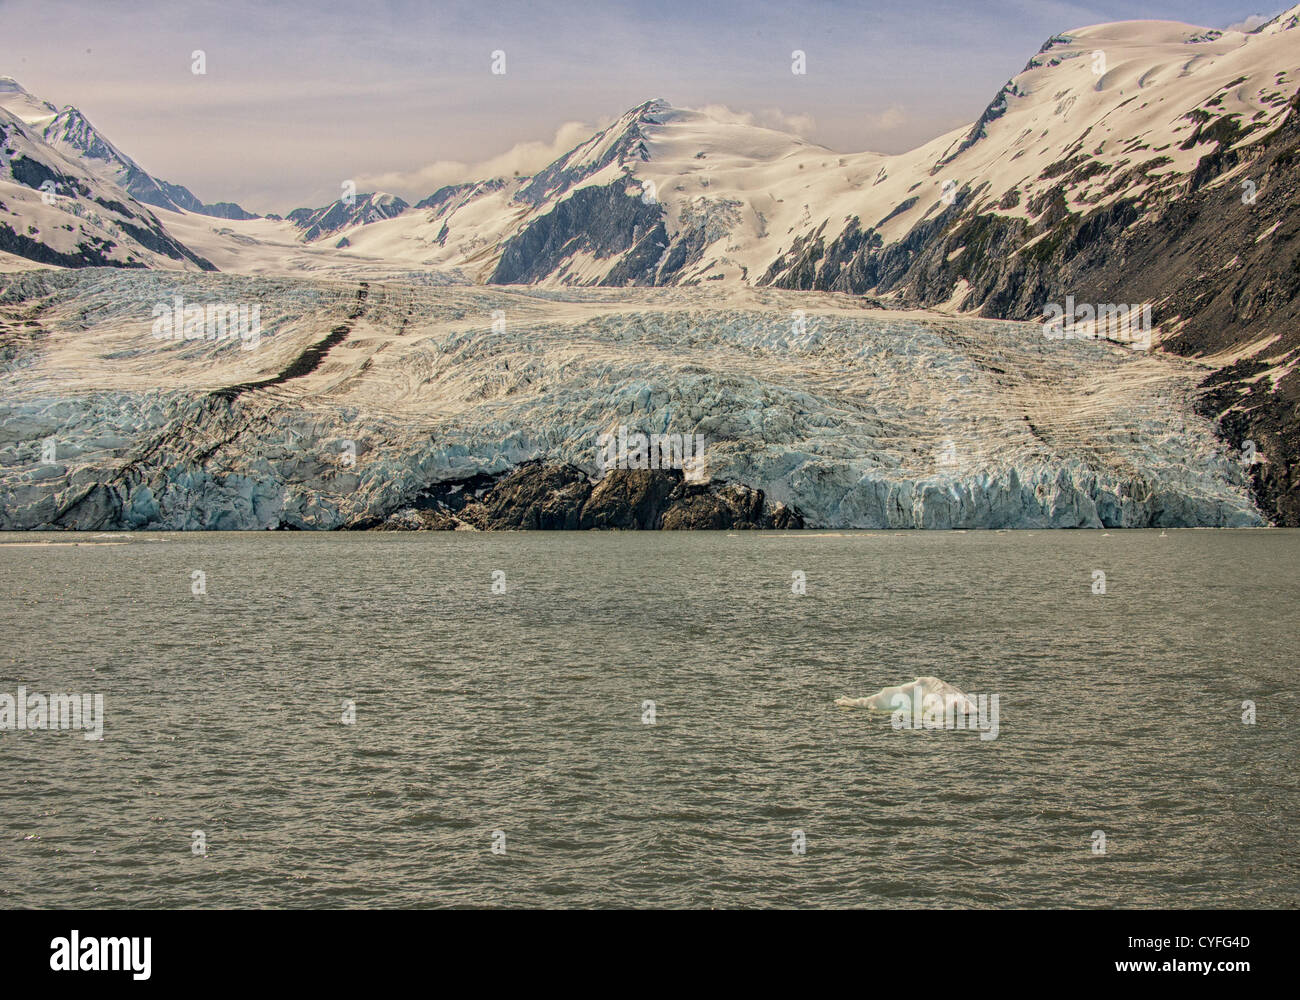 Junio 29, 2012 - Península Kenai, Alaska, EE.UU. - En la Península Kenai dentro del Bosque Nacional Chugach, rodeado por las formidables montañas Chugach, cubierto de nieve glaciar Portage es la atracción turística más visitada en Alaska. Gran parte de la cara del glaciar se encuentra en el agua y se extiende hacia abajo más de 100 pies en Portage Lake. Durante el siglo pasado, los terminus del glaciar ha retrocedido casi 5 kilómetros hasta su ubicación actual. (Crédito de la Imagen: © Arnold Drapkin/ZUMAPRESS.com) Foto de stock